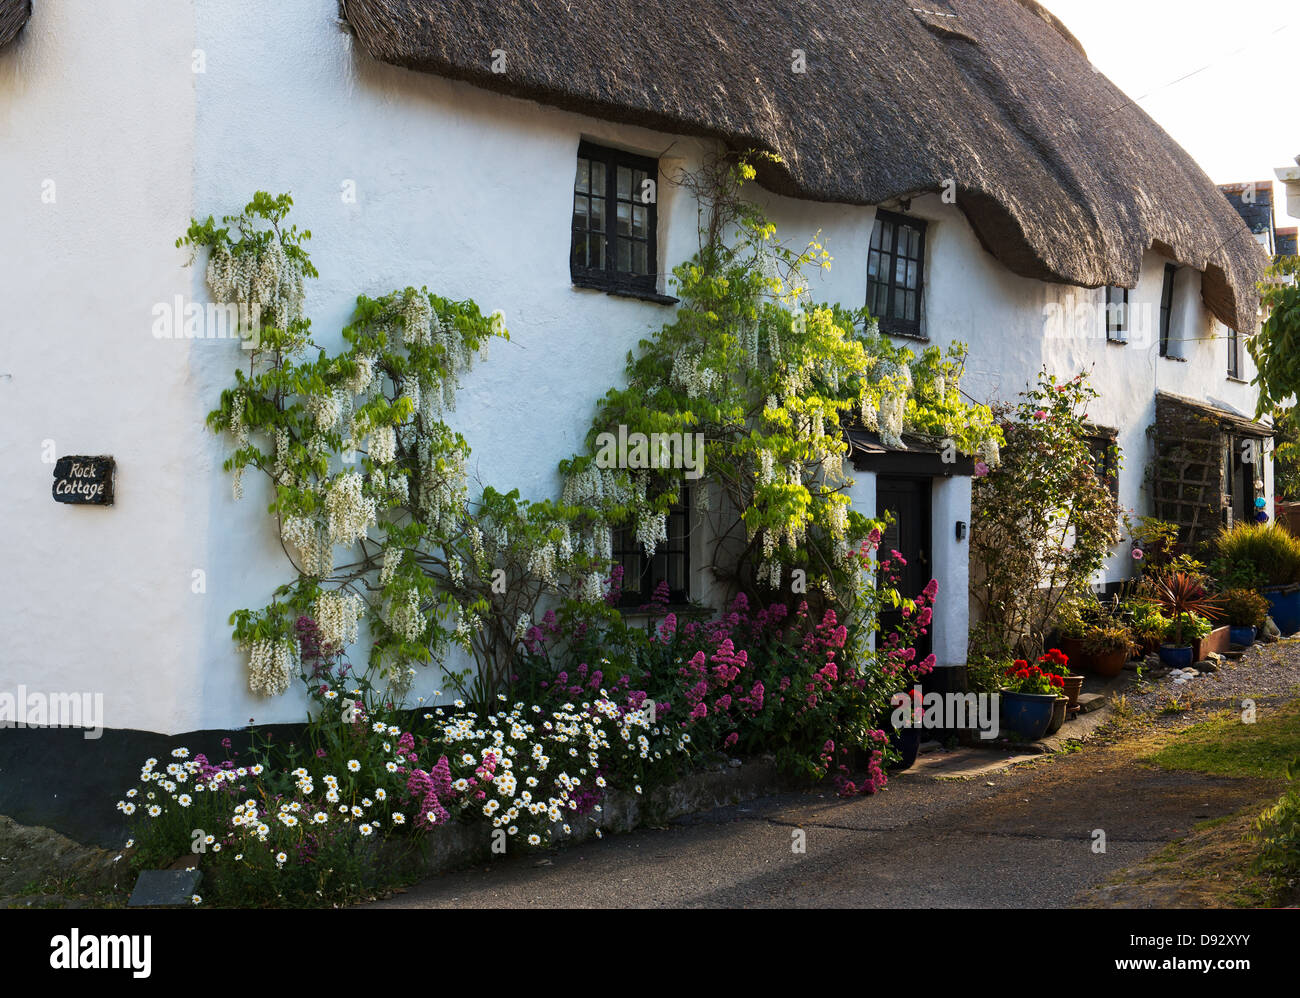 Chaumière, glycines et fleurs en plein soleil. Ringmore, Devon, Angleterre Banque D'Images